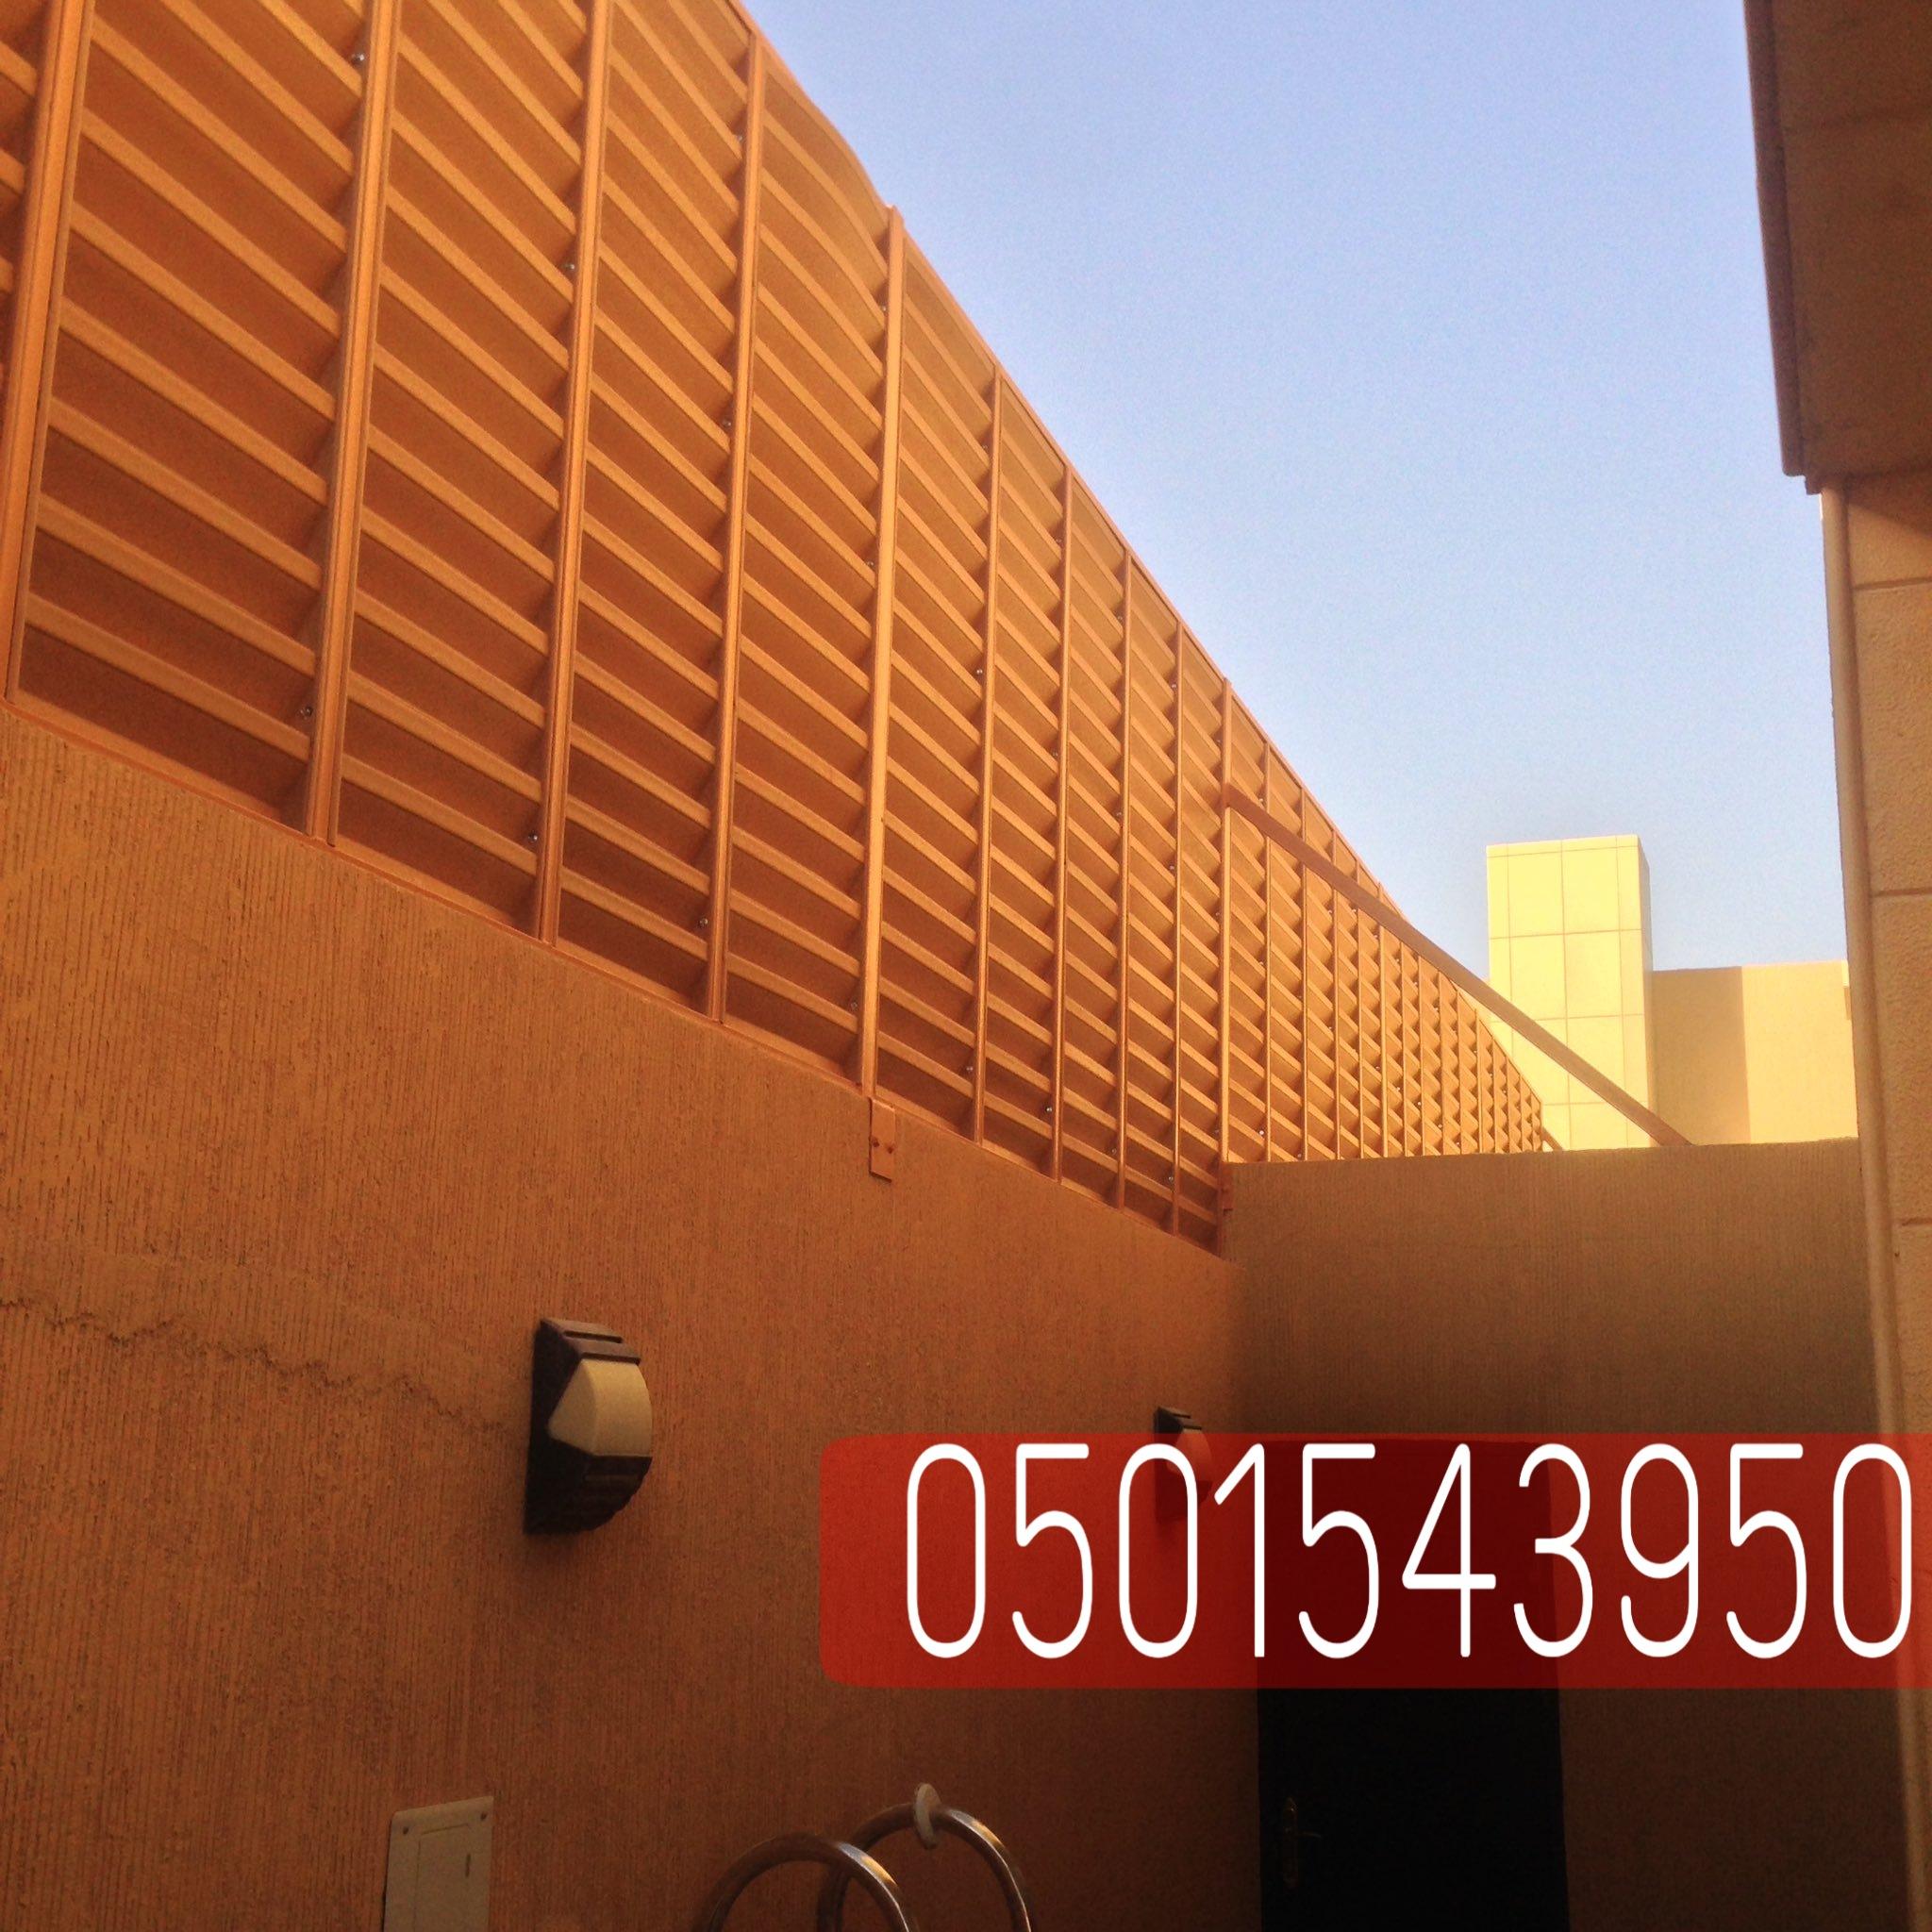 تركيب سواتر جداريه في الرياض جده,0501543950 229422384